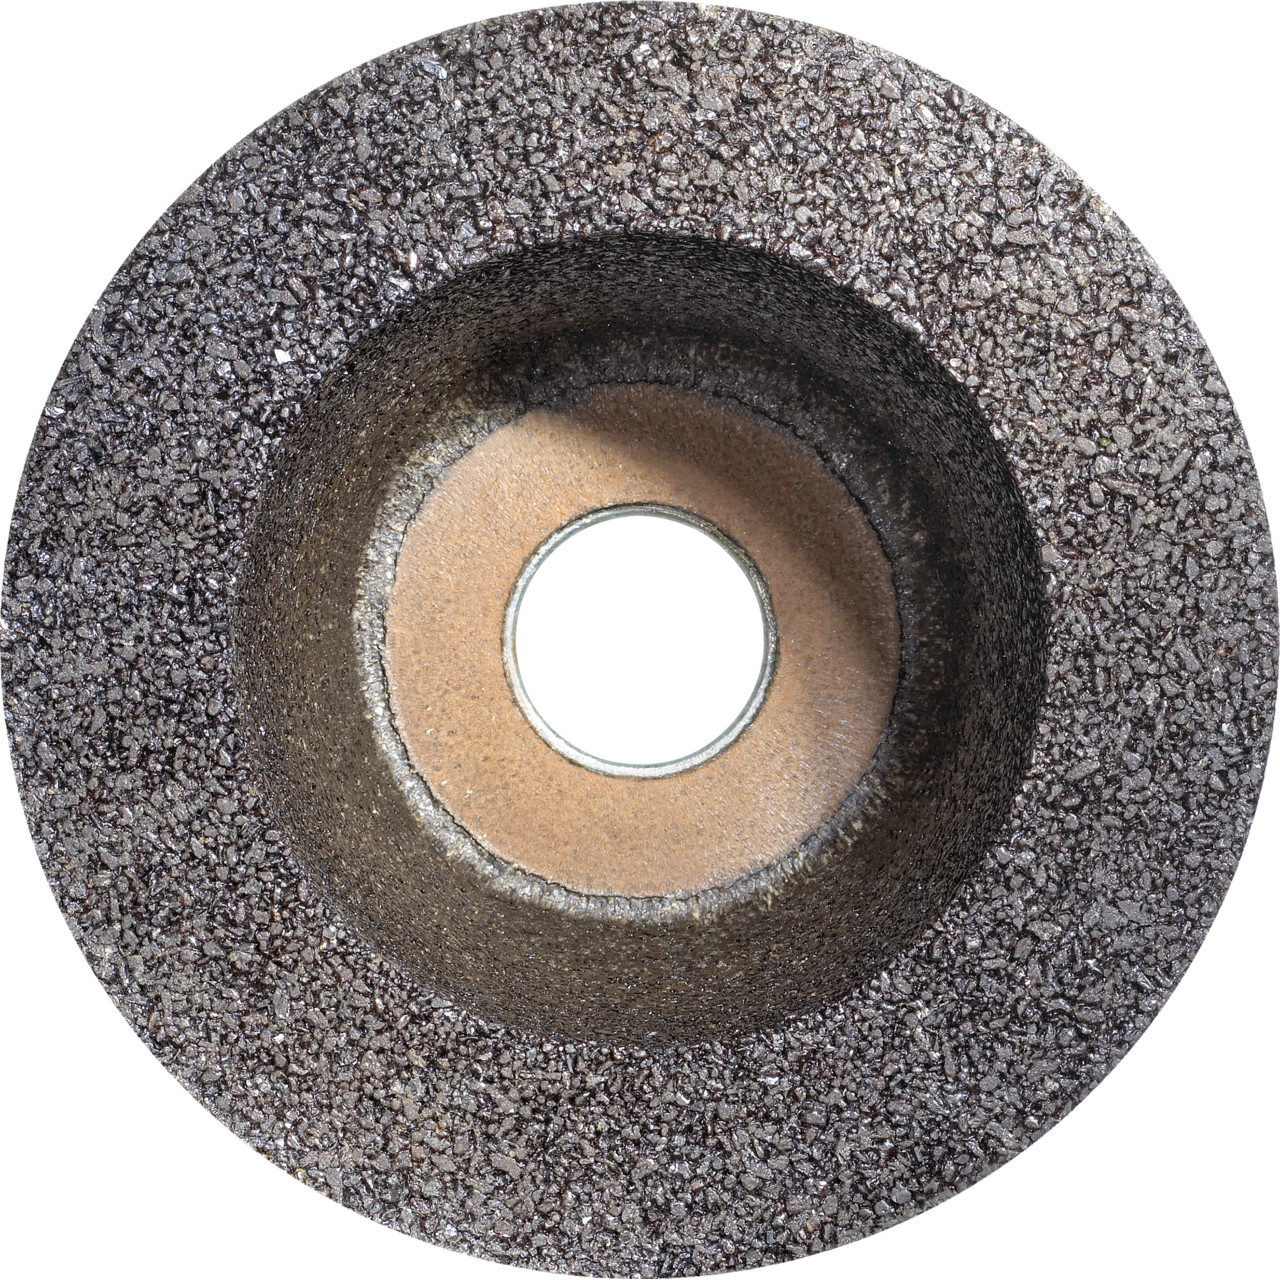 Tazza in resina sintetica Tyrolit D/JxDxH 110/90x55x22.2 Per pietra, forma: ruota a tazza 11BT, Art. 895671